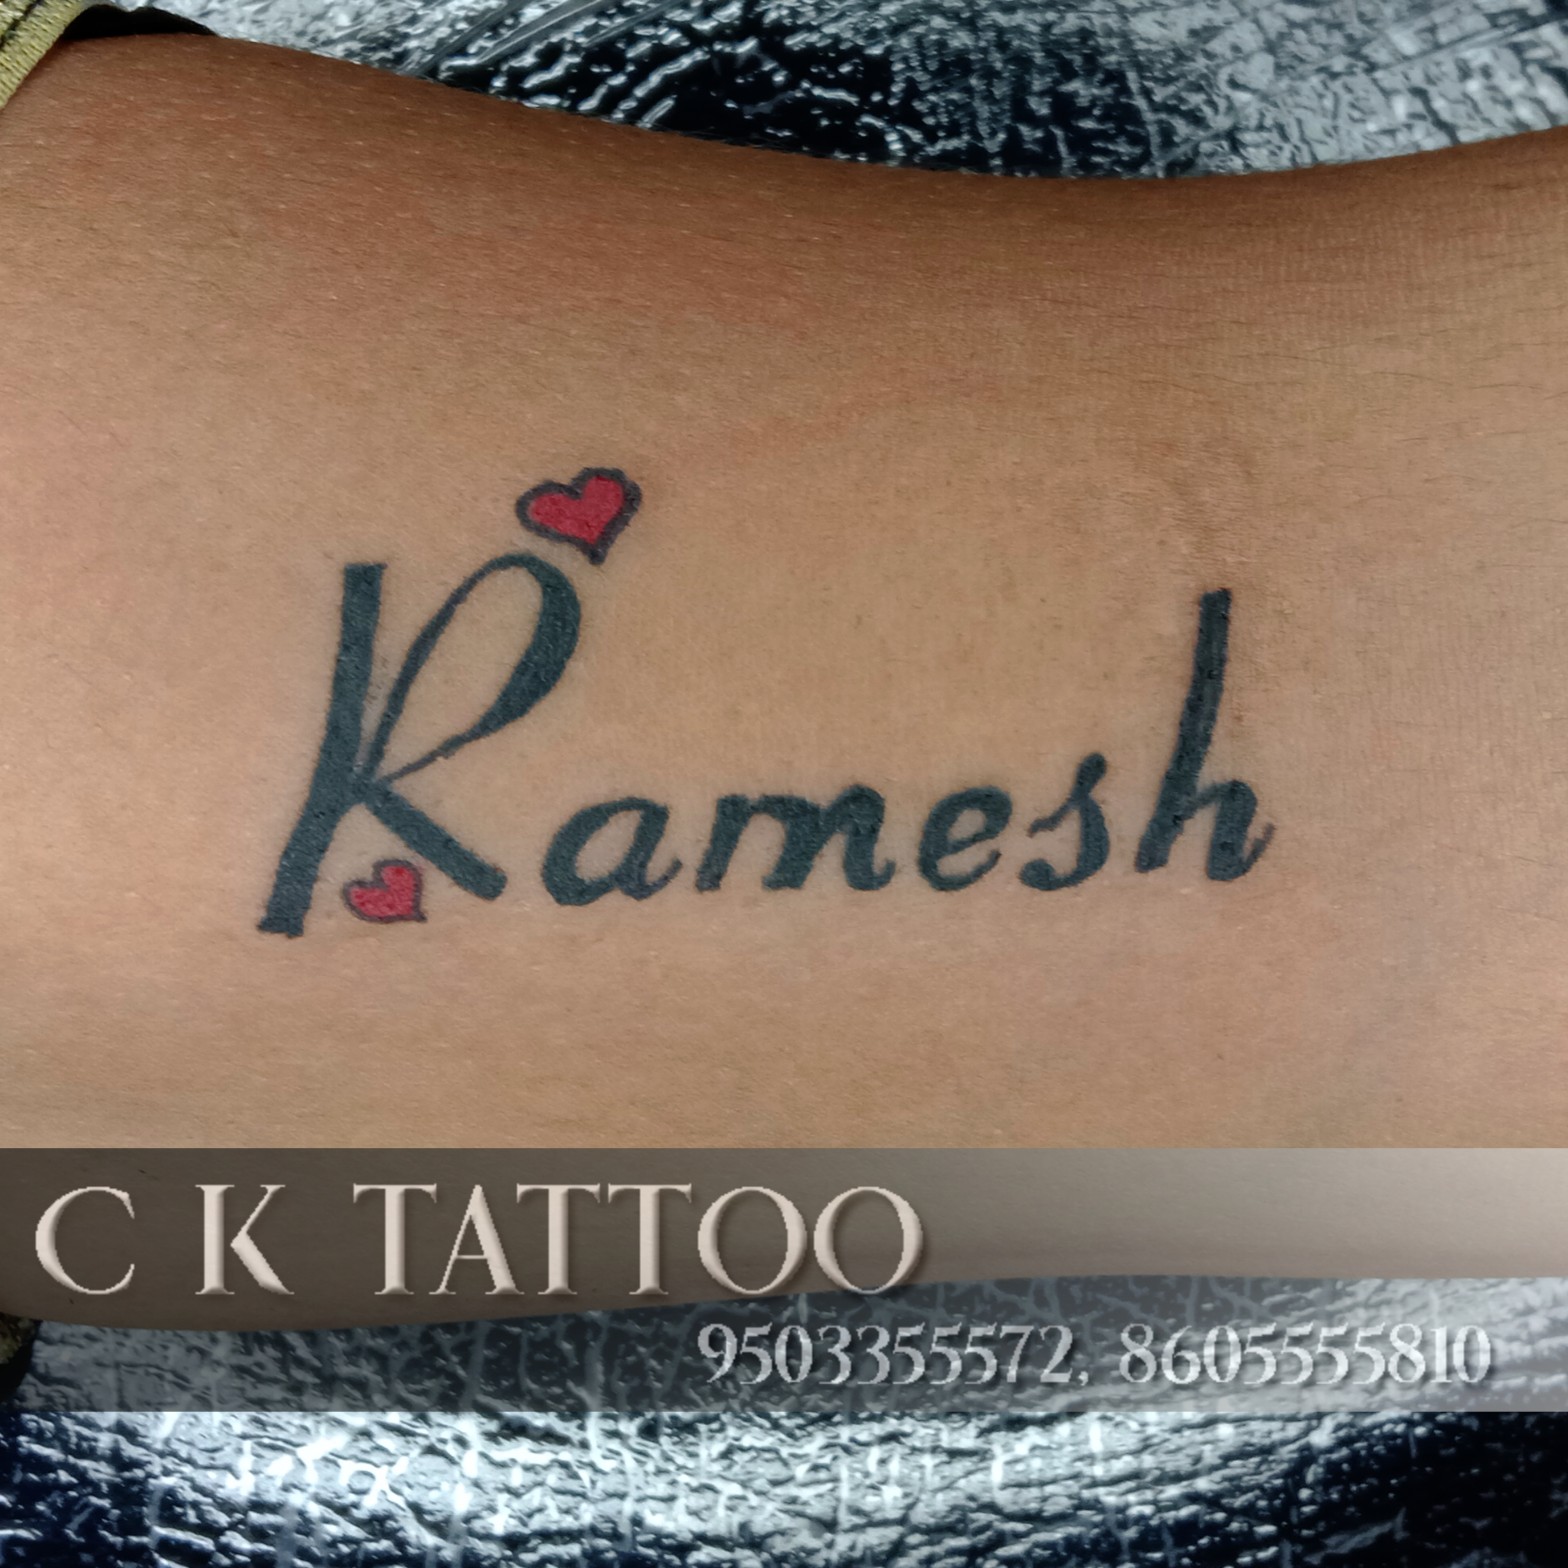 Adesh name tattoo  Skin art Name tattoo Tattoos